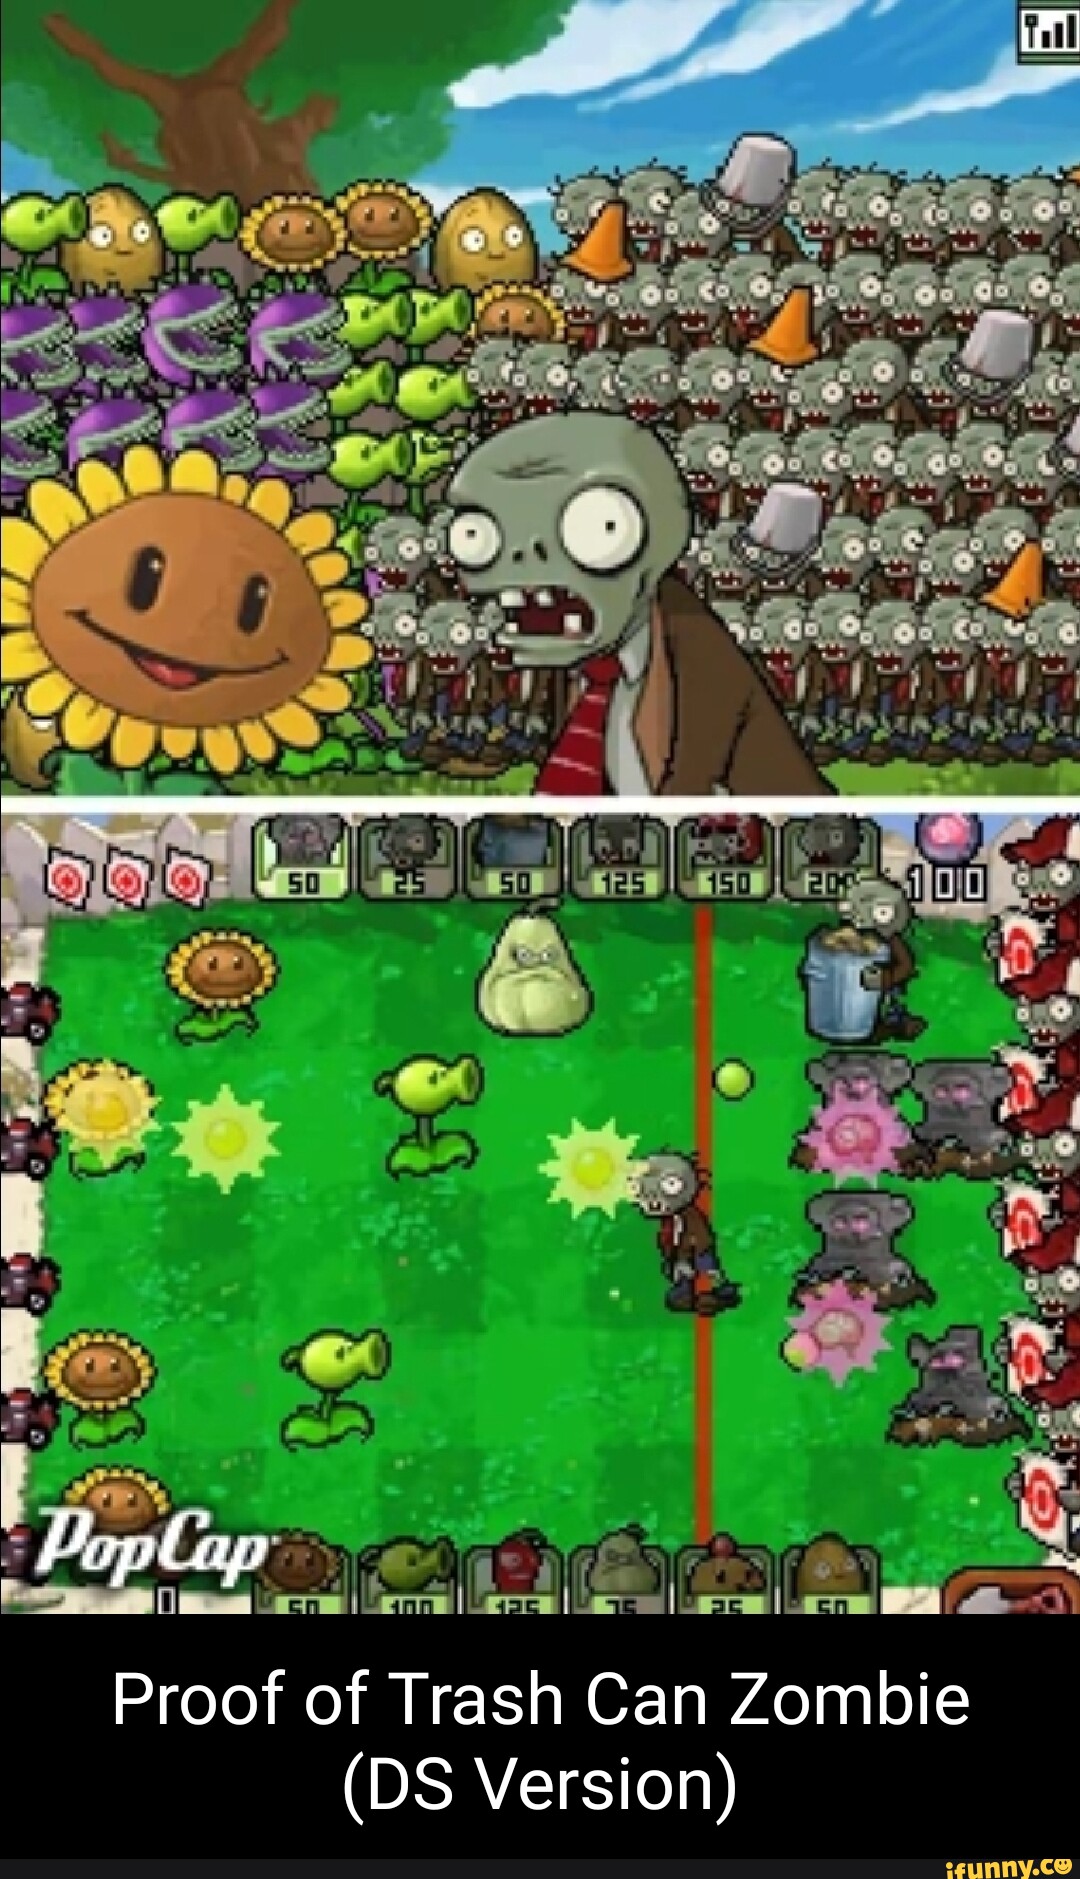 Plant vs zombie nintendo. Nintendo DS растения против зомби. Plants vs Zombies NDS. Растения против зомби Нинтендо ДС. Plants vs. Zombies Нинтендо.